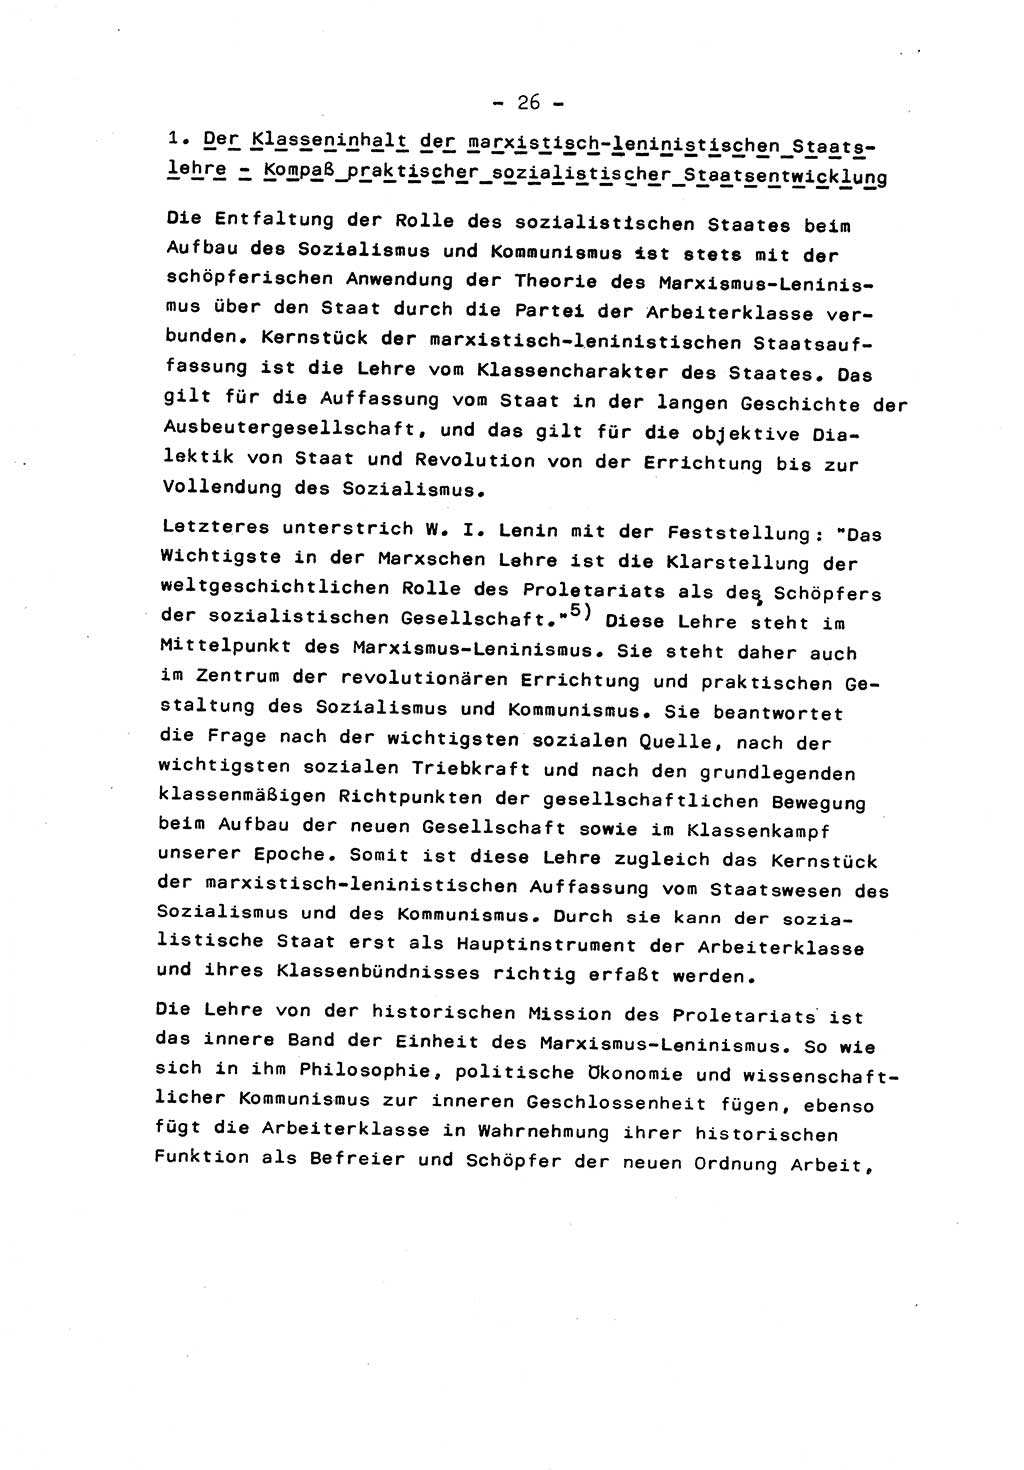 Marxistisch-leninistische Staats- und Rechtstheorie [Deutsche Demokratische Republik (DDR)] 1975, Seite 26 (ML St.-R.-Th. DDR 1975, S. 26)